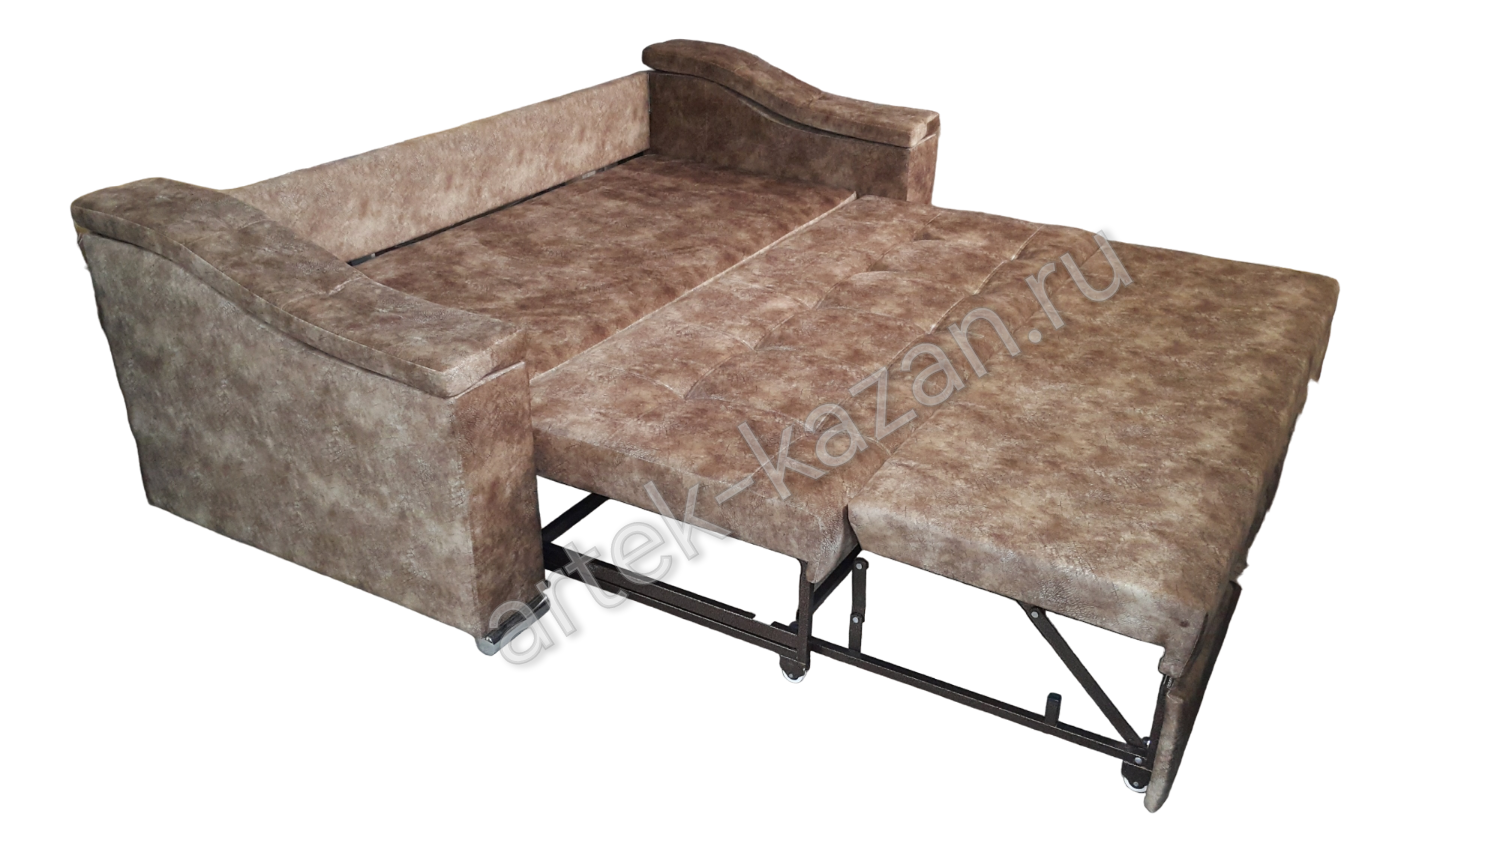 Мини диван на выкатном механизме Миник фото № 29. Купить недорогой диван по низкой цене от производителя можно у нас.